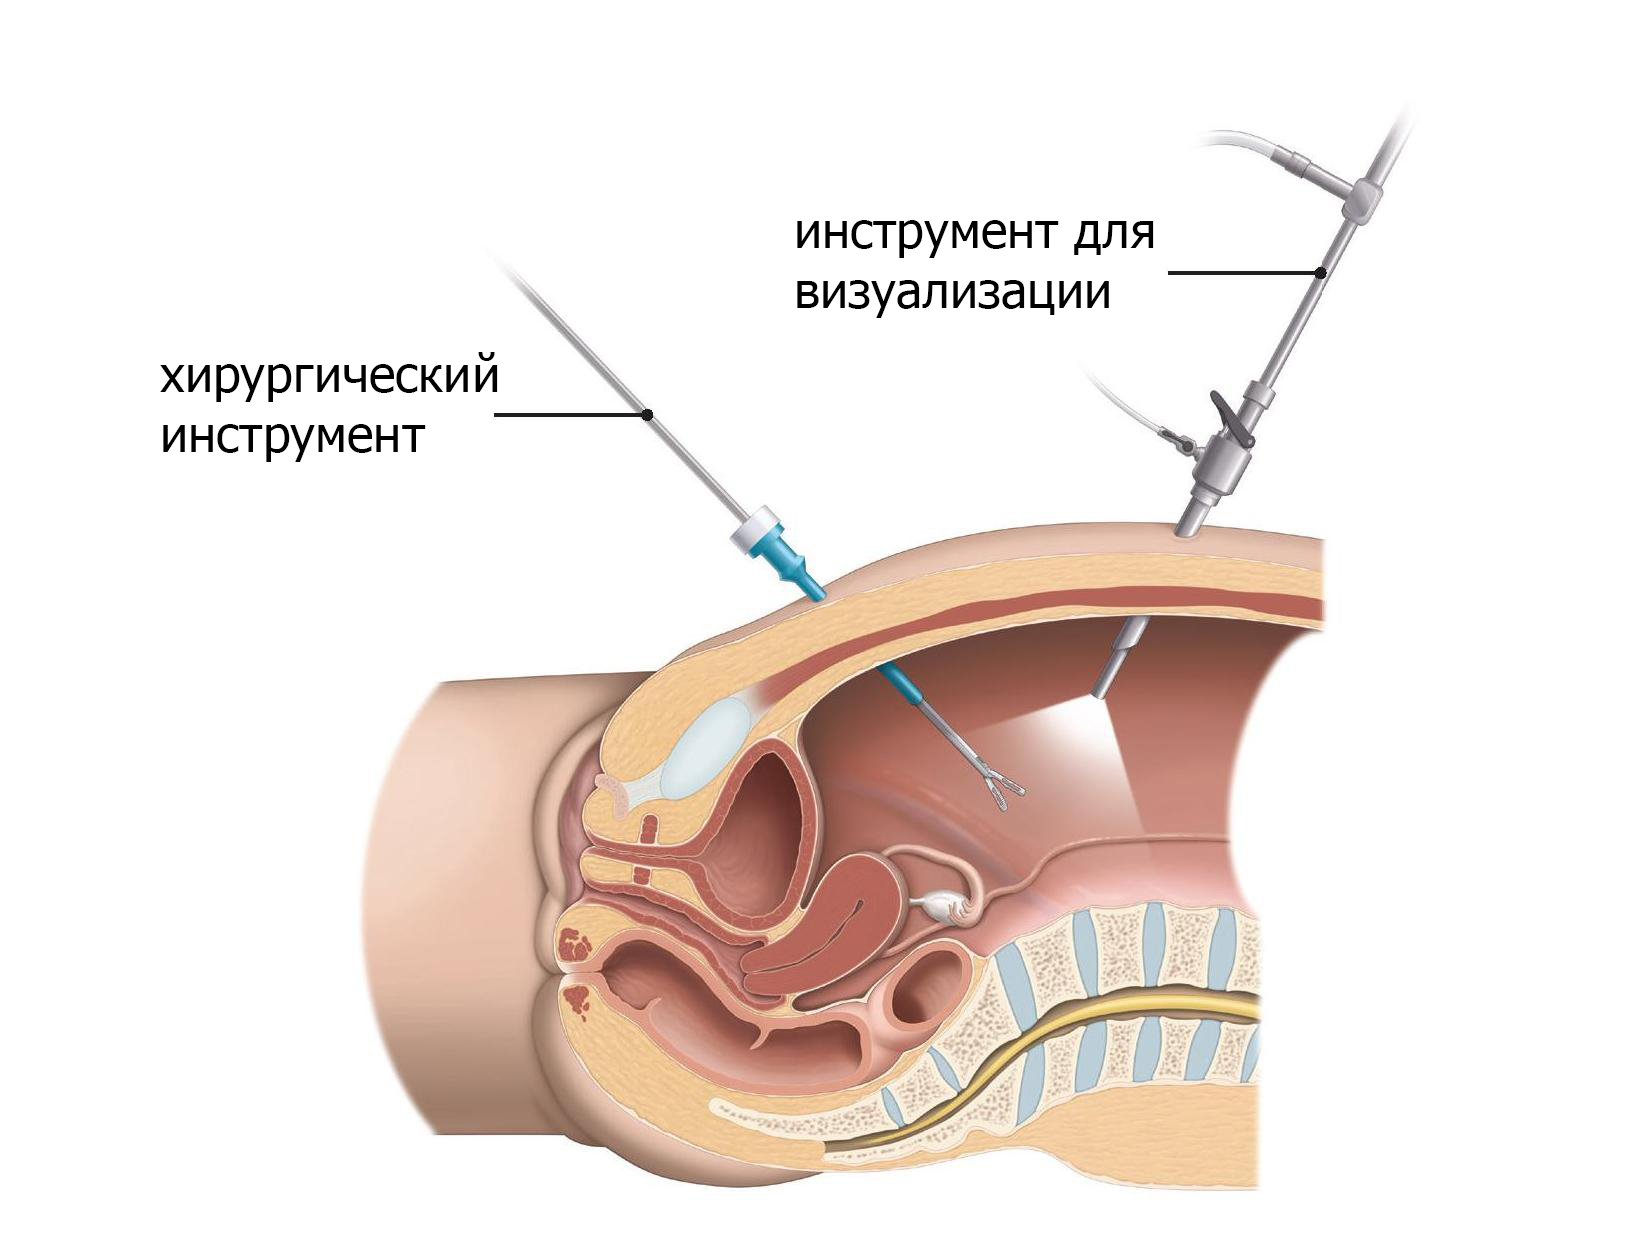 В лапароскопической хирургии вводятся инструменты через небольшие порты в брюшной полости